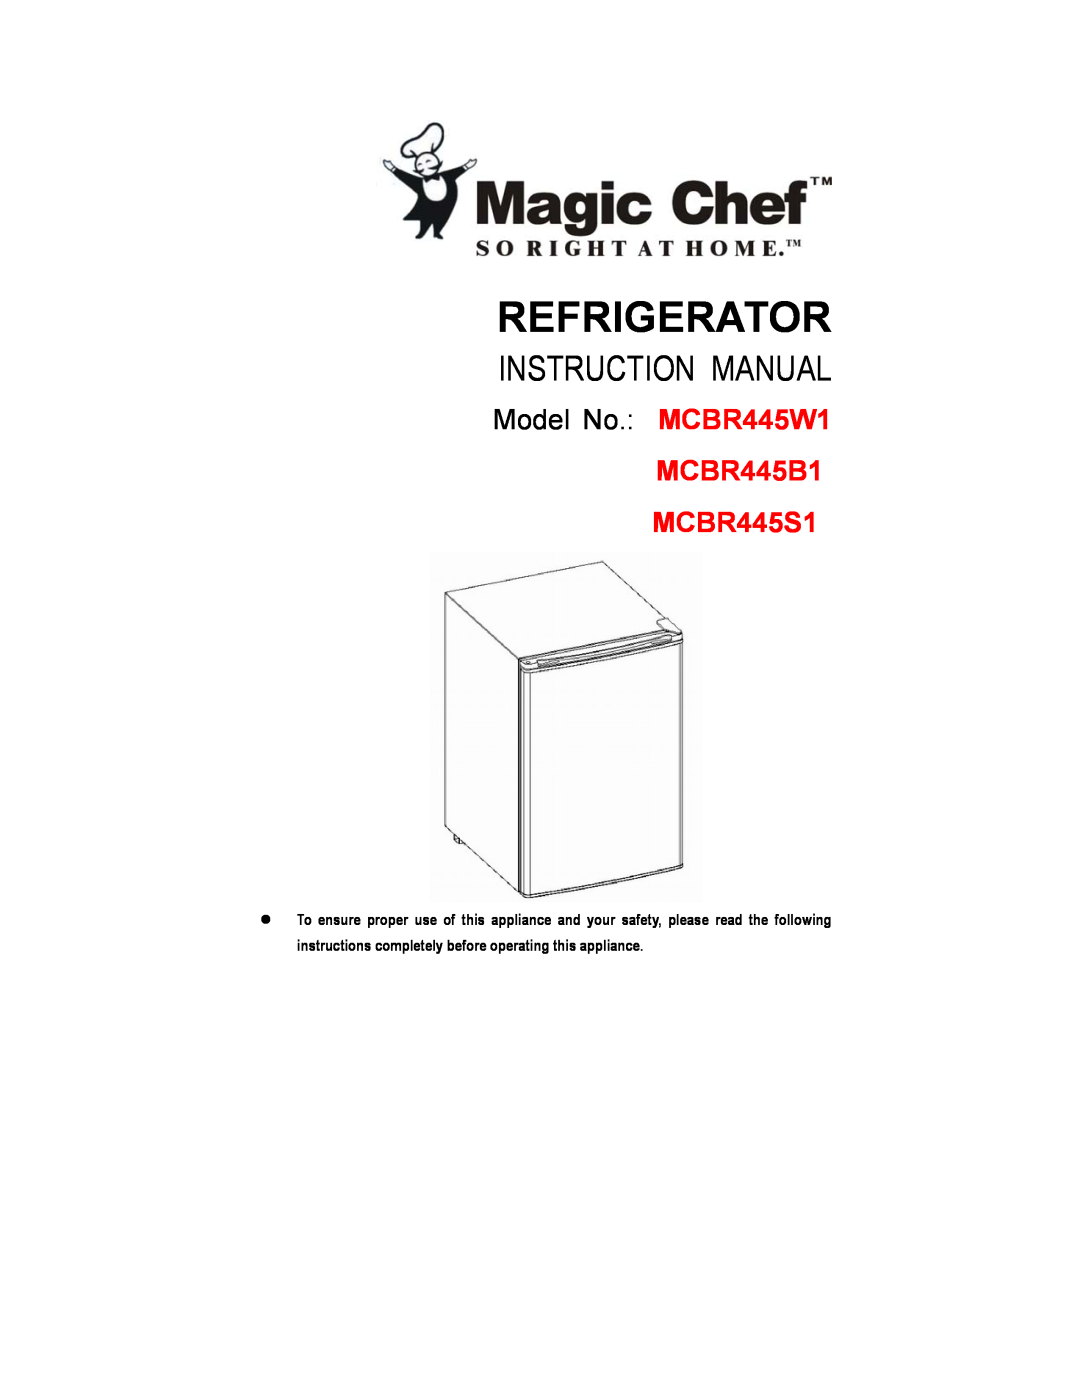 Magic Chef instruction manual Refrigerator, Model No. MCBR445W1, MCBR445B1 MCBR445S1 